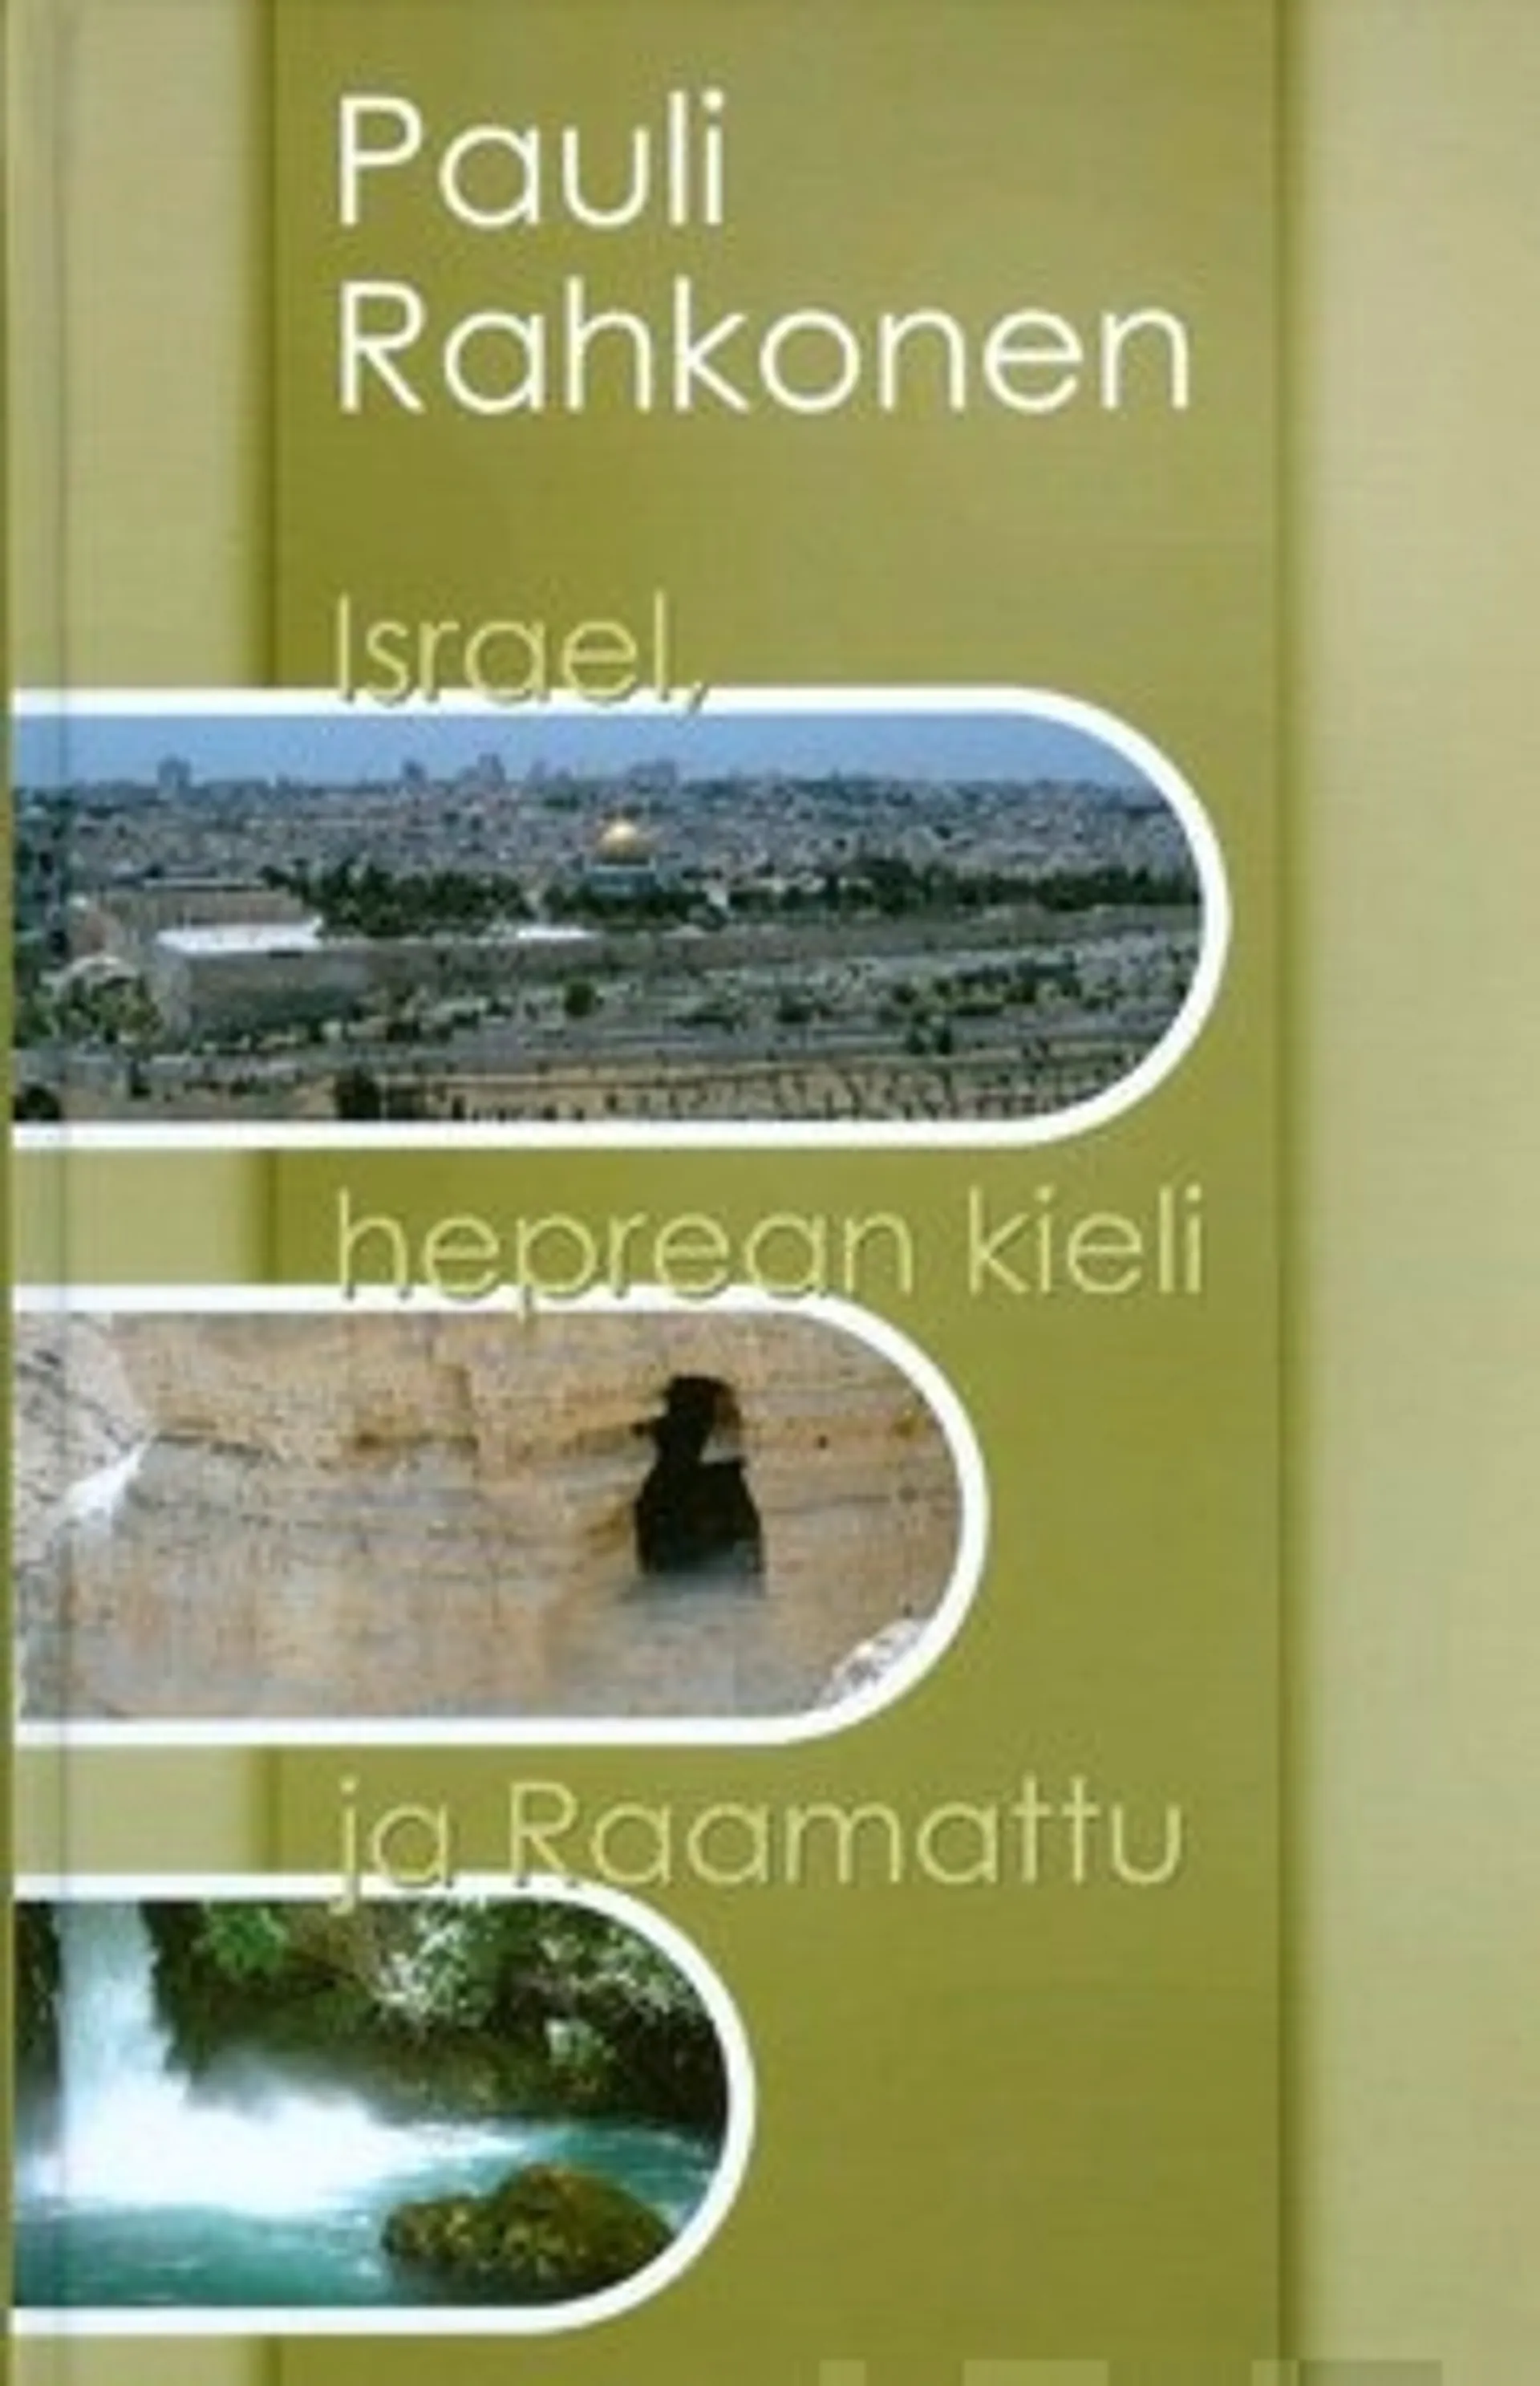 Israel, Heprean kieli ja Raamattu